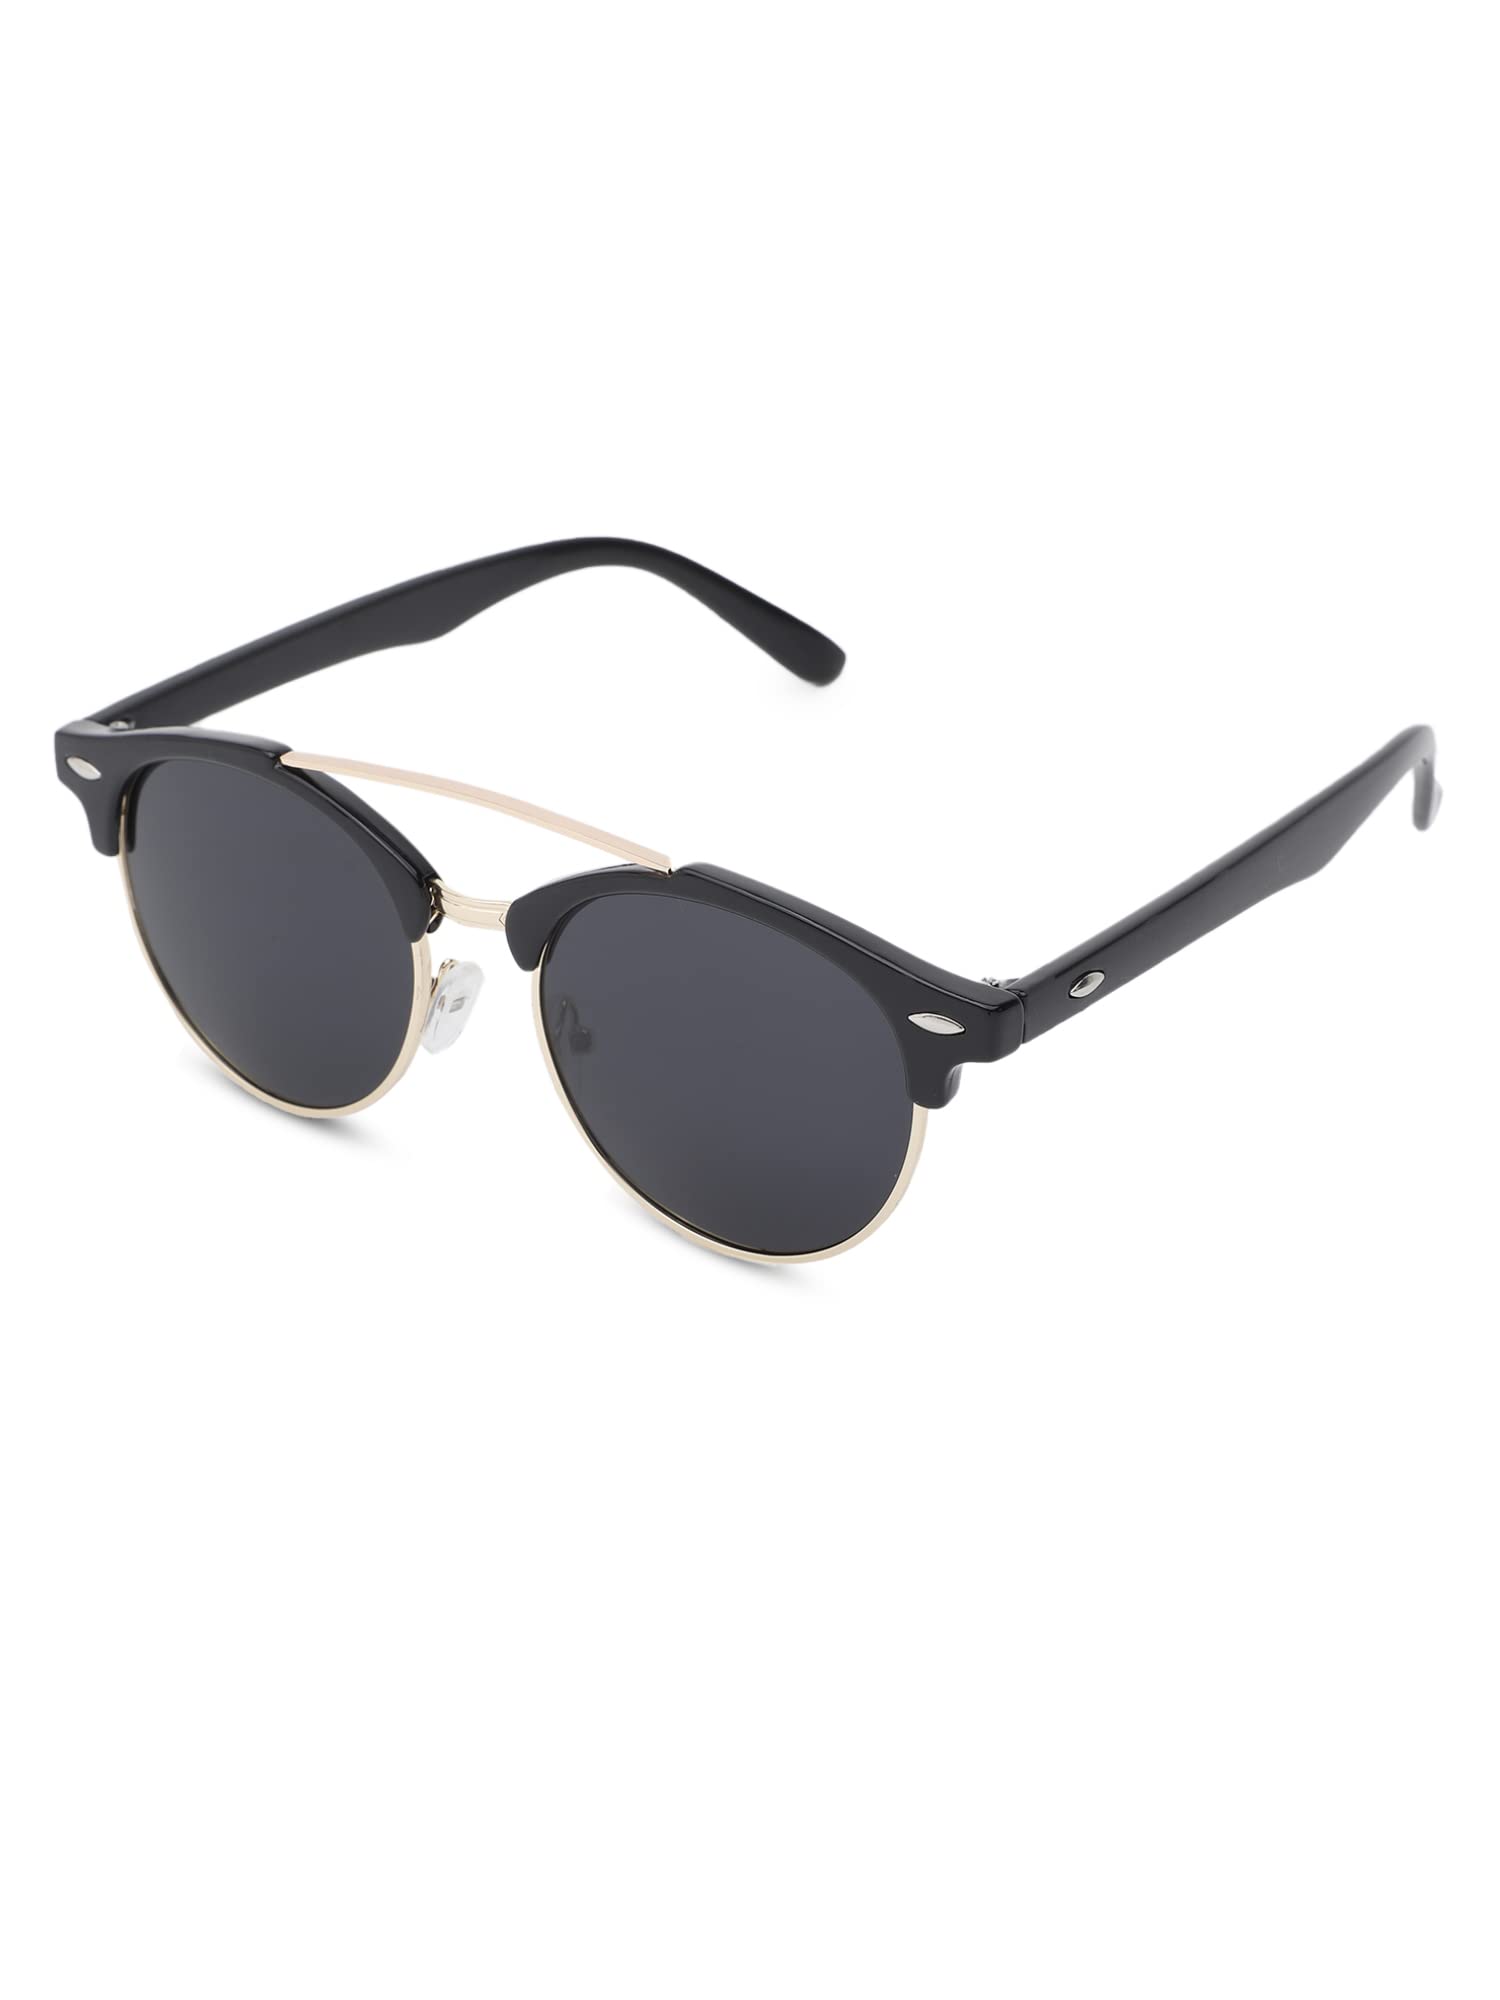 Intellilens Round Sunglasses For Men & Women|UV Protected Goggles for Men & Women (Black & Grey) (52-17-138)